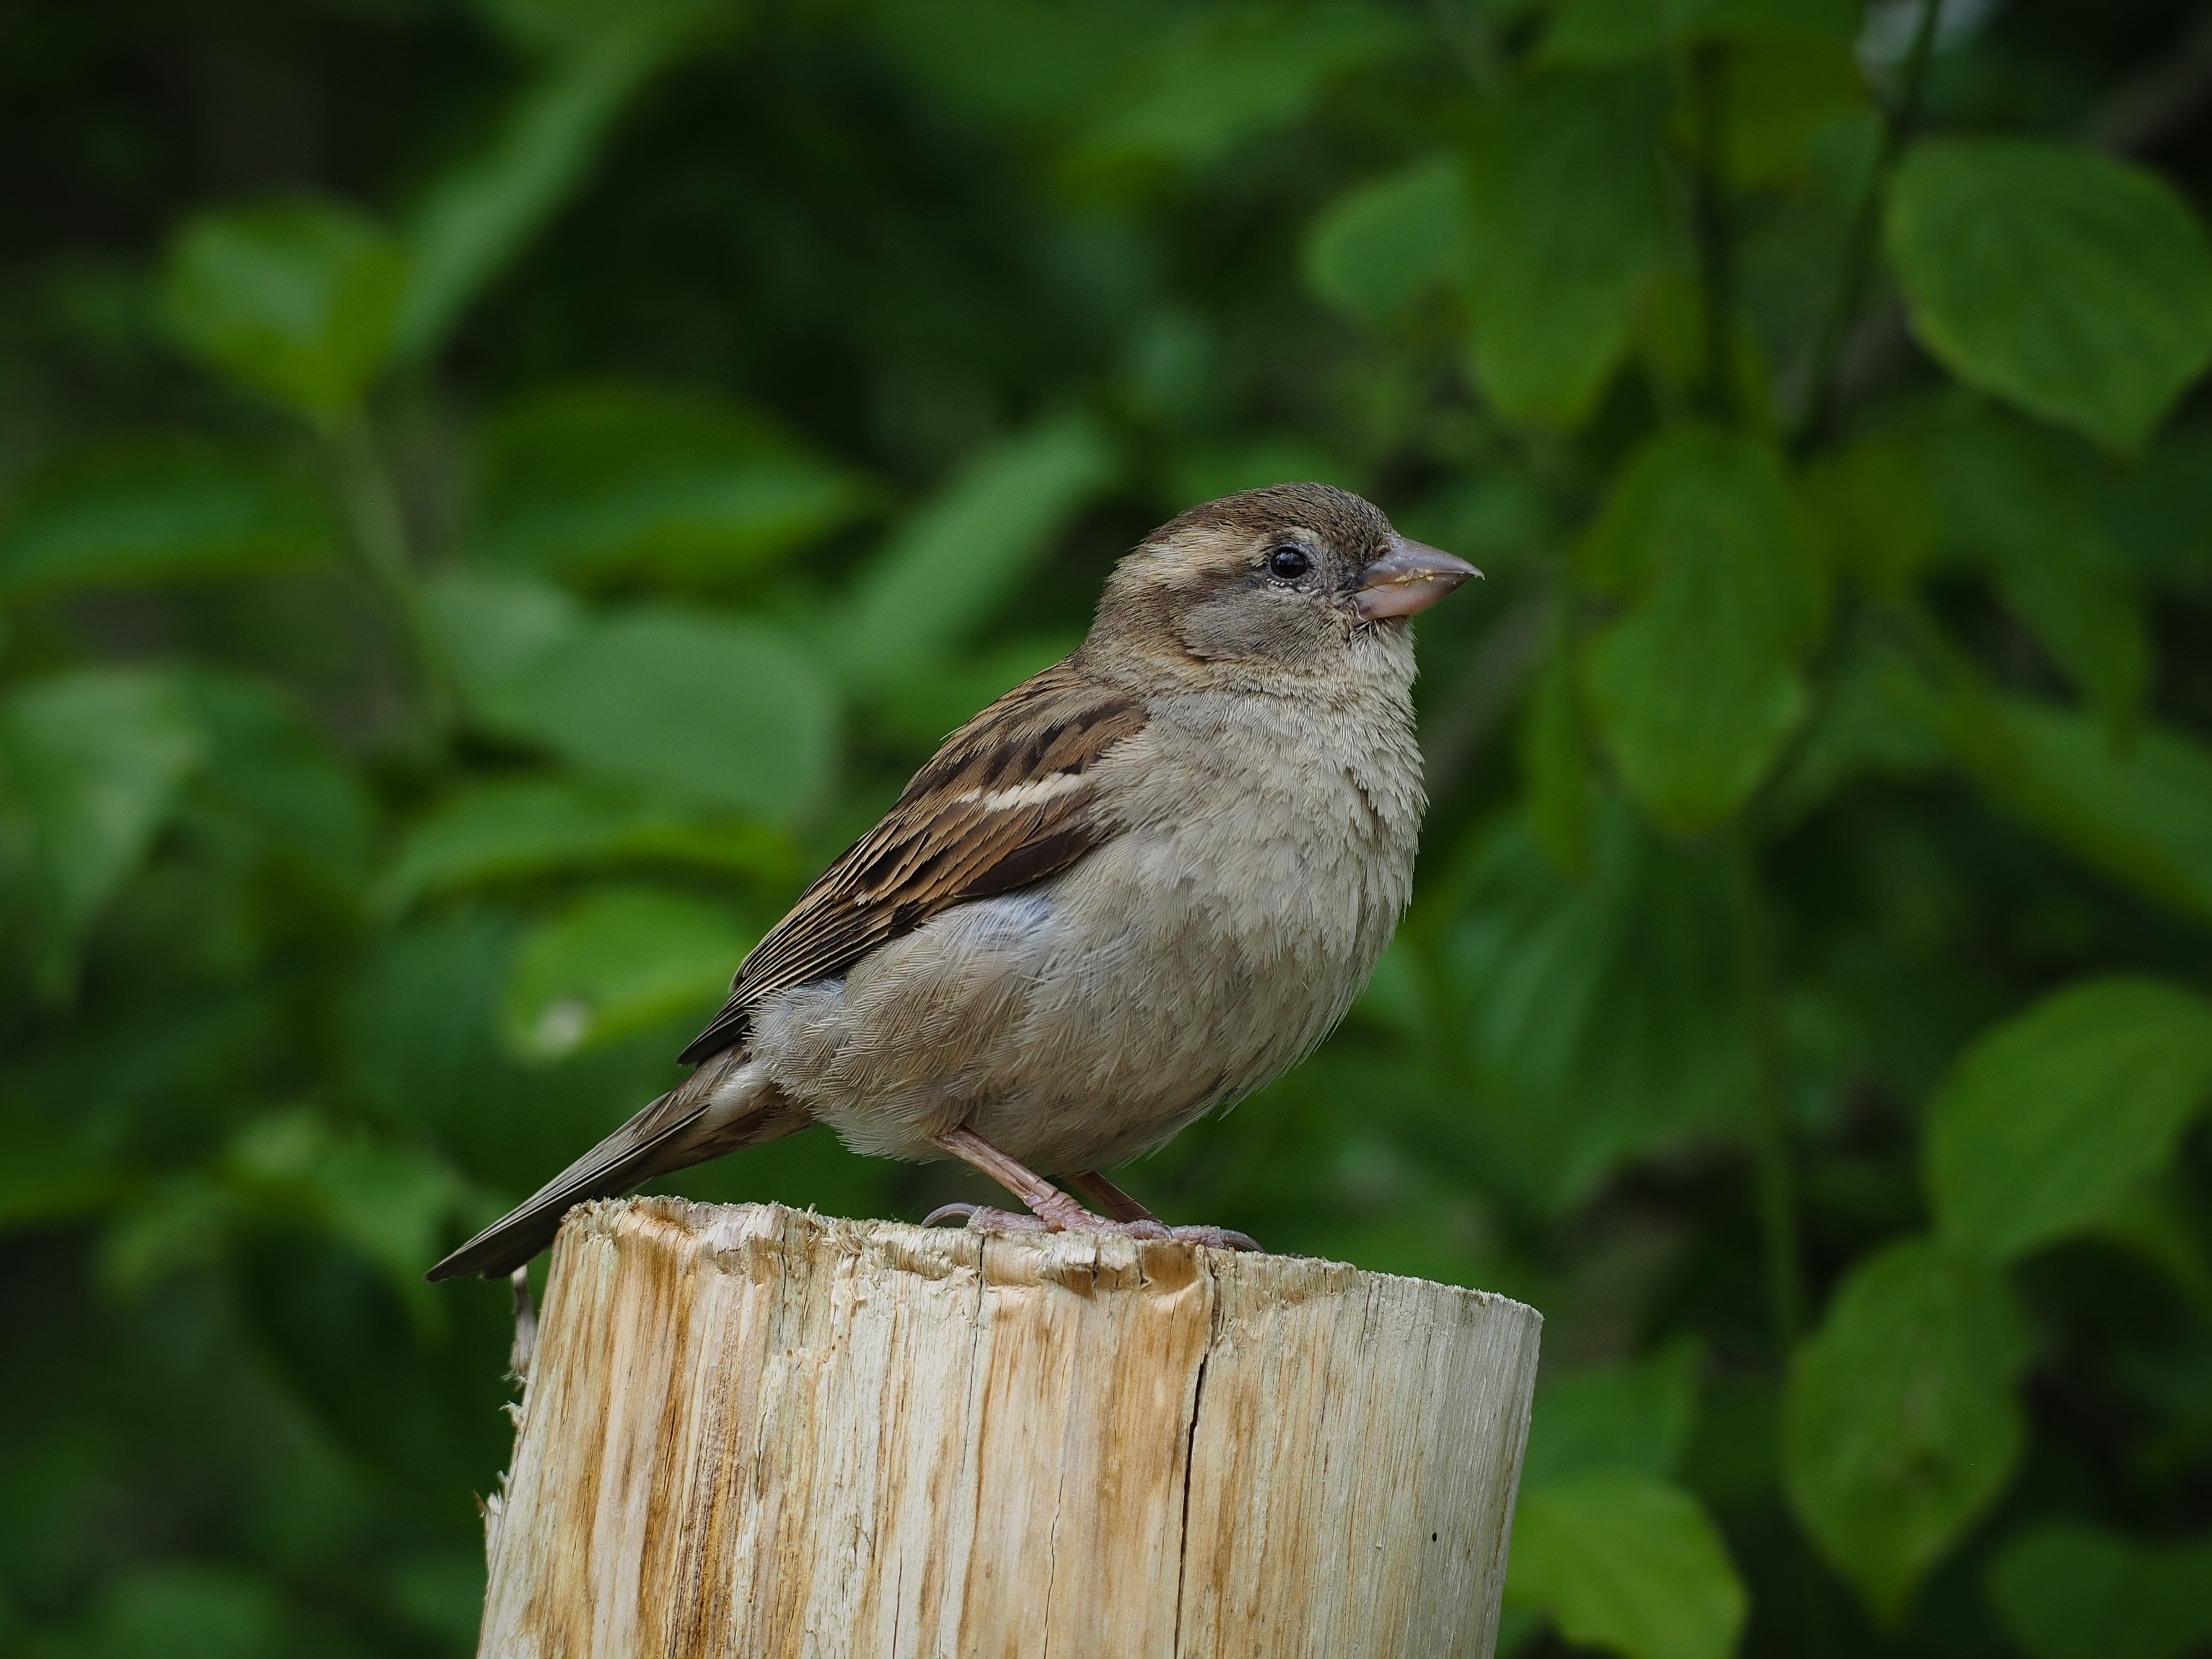 brown bird on brown wood at daytime